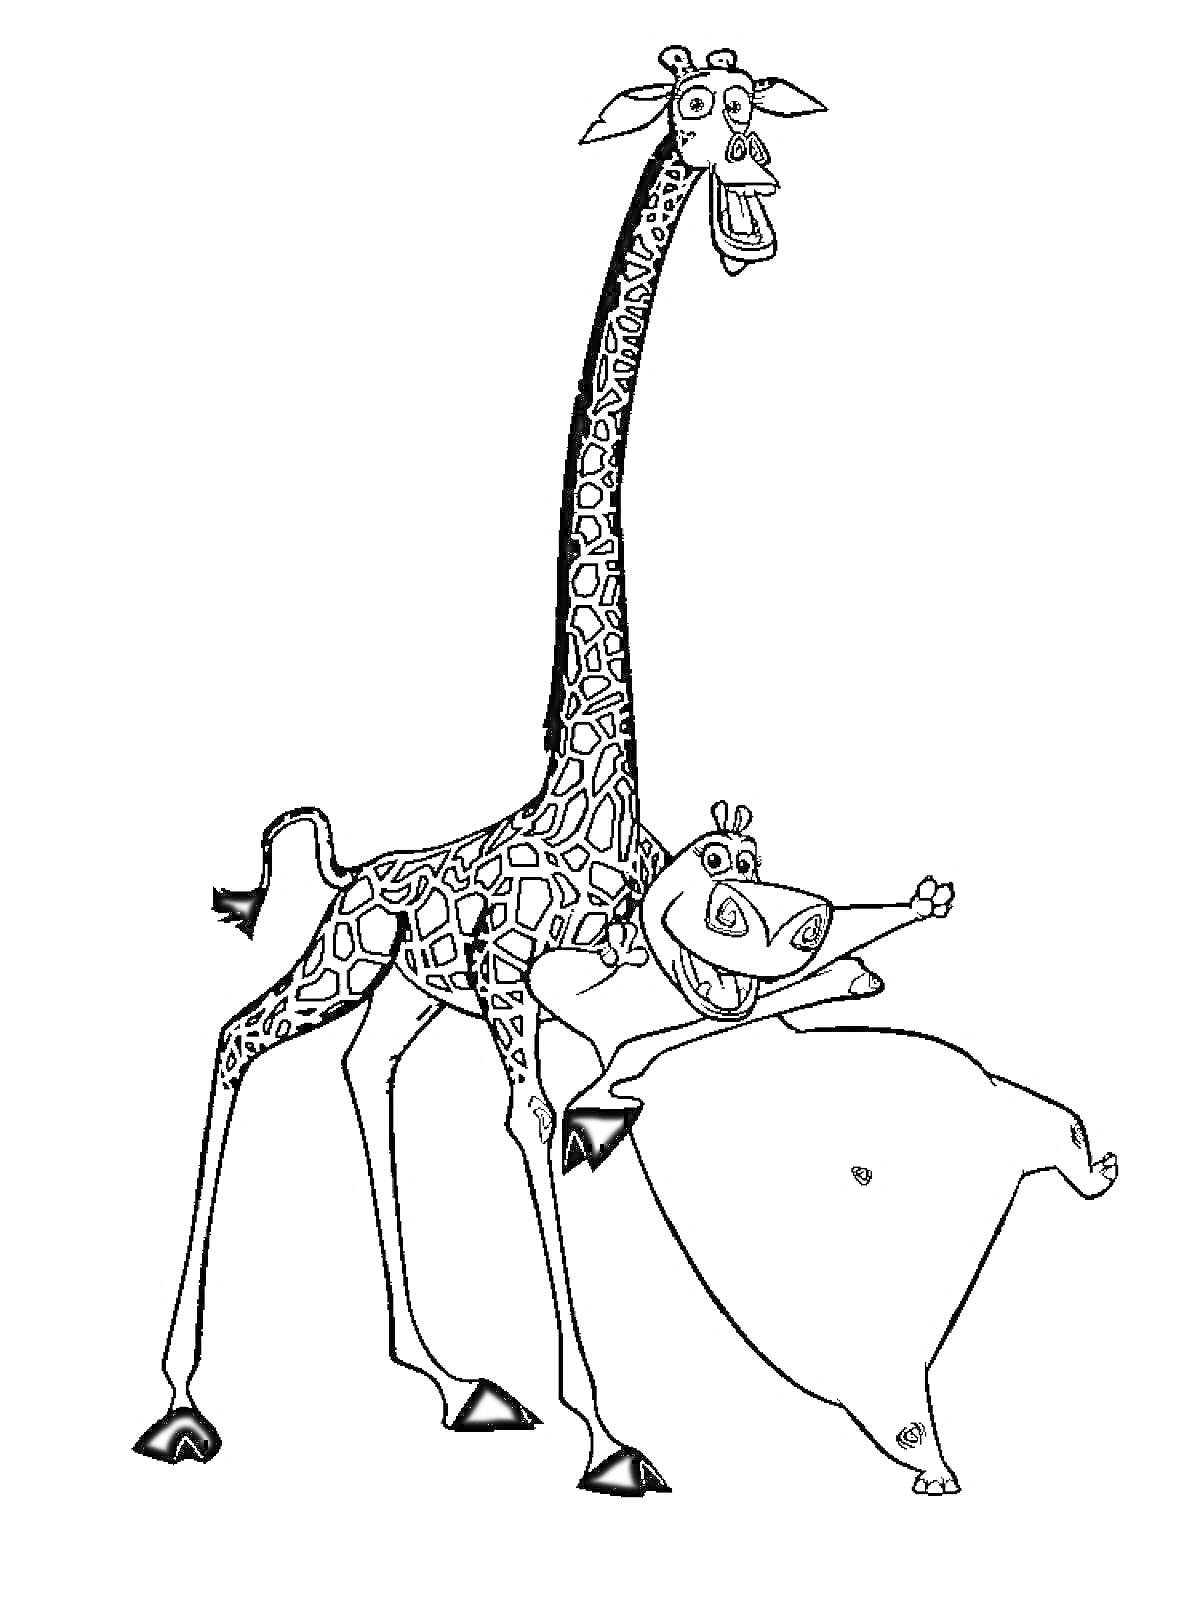 Жираф и бегемот из мультфильма 